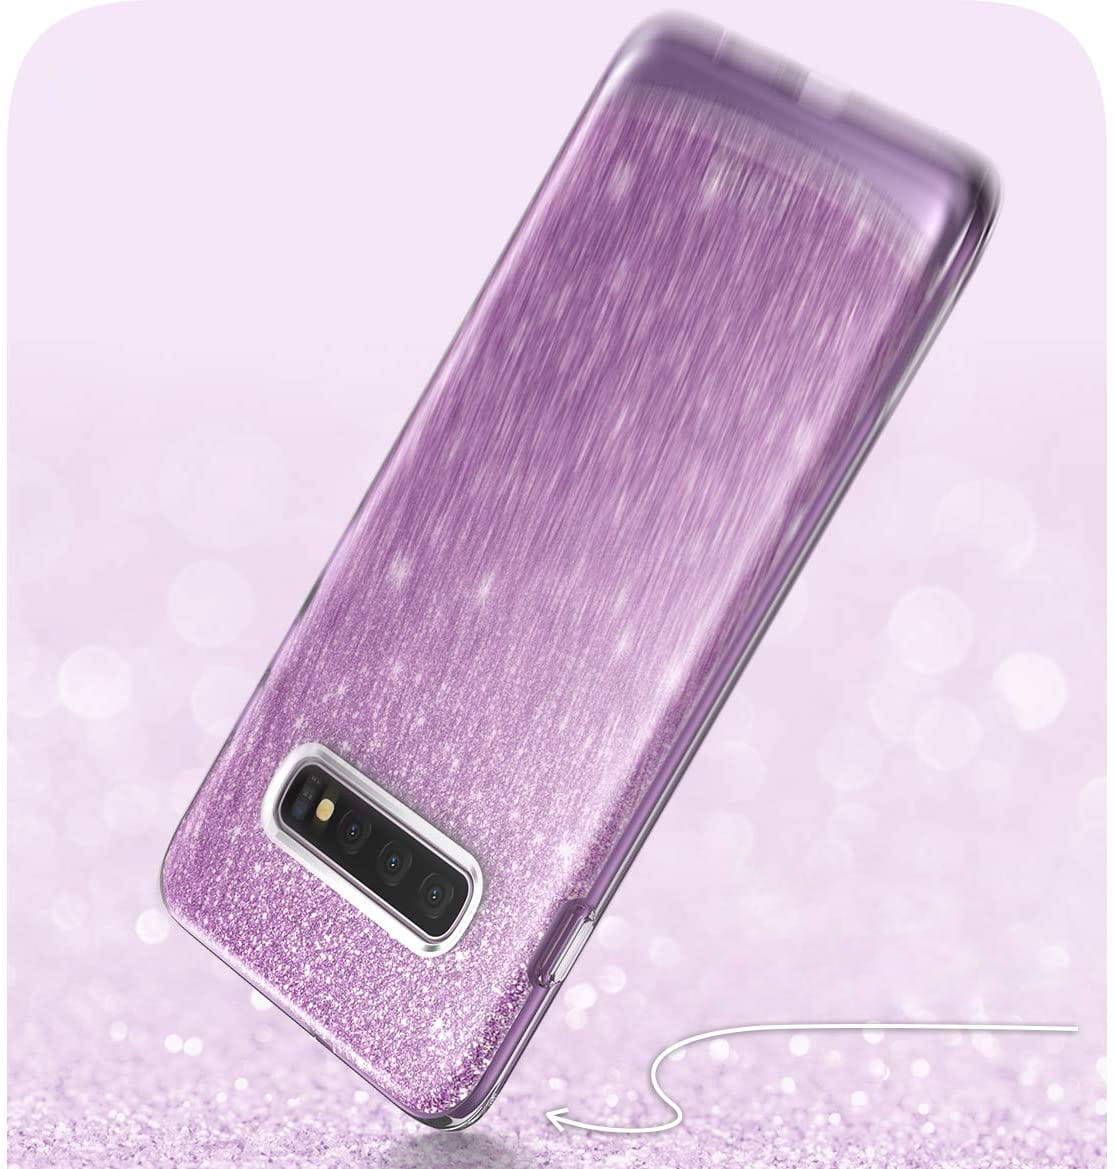 Gepanzerte Schutzhülle Supcase i-Blason Cosmo für Galaxy S10 Plus, glitzer violett.